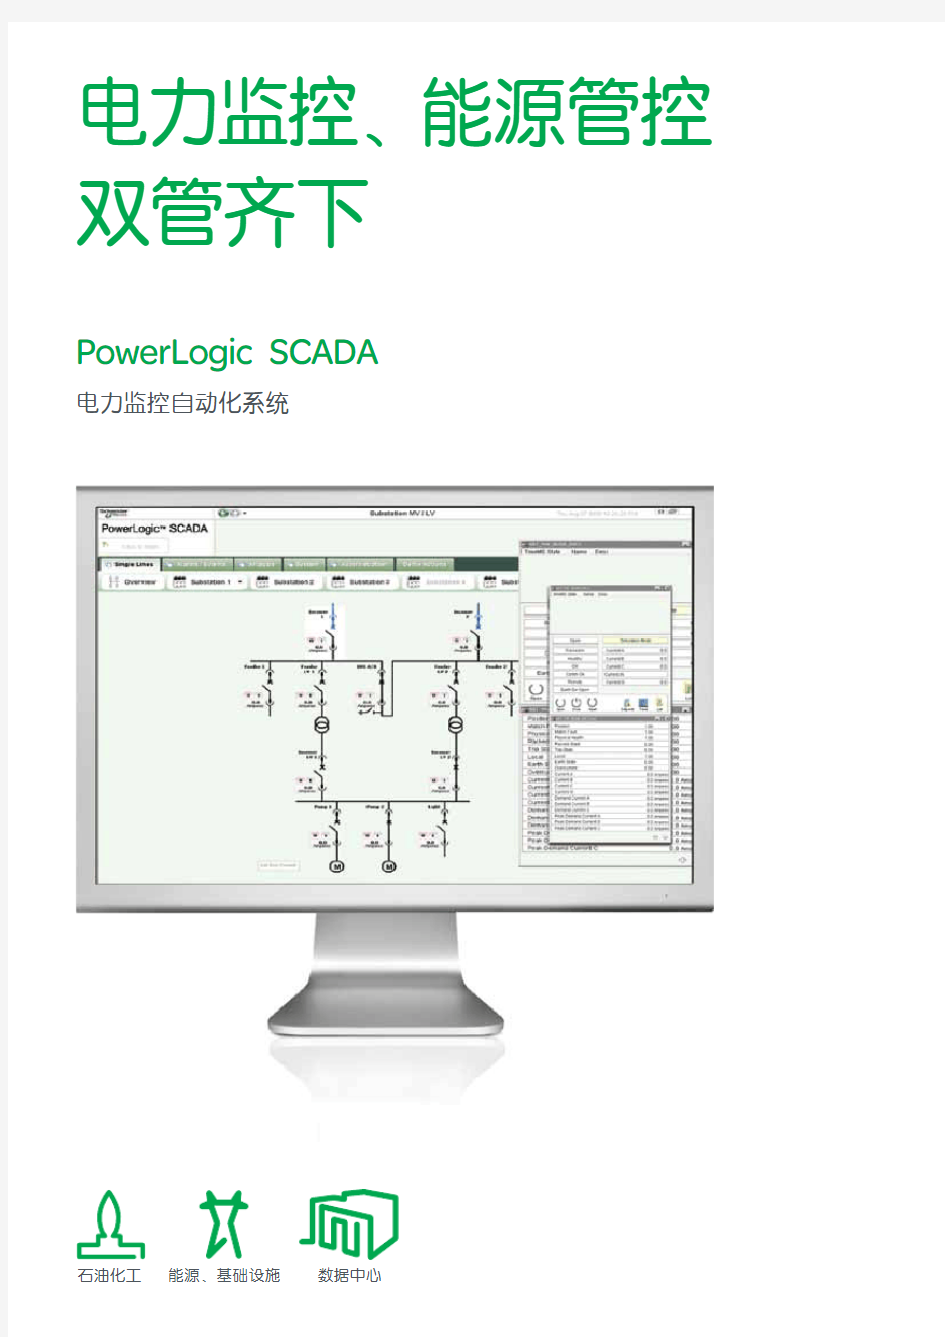 施耐德PowerLogic SCADA电力监控自动化系统